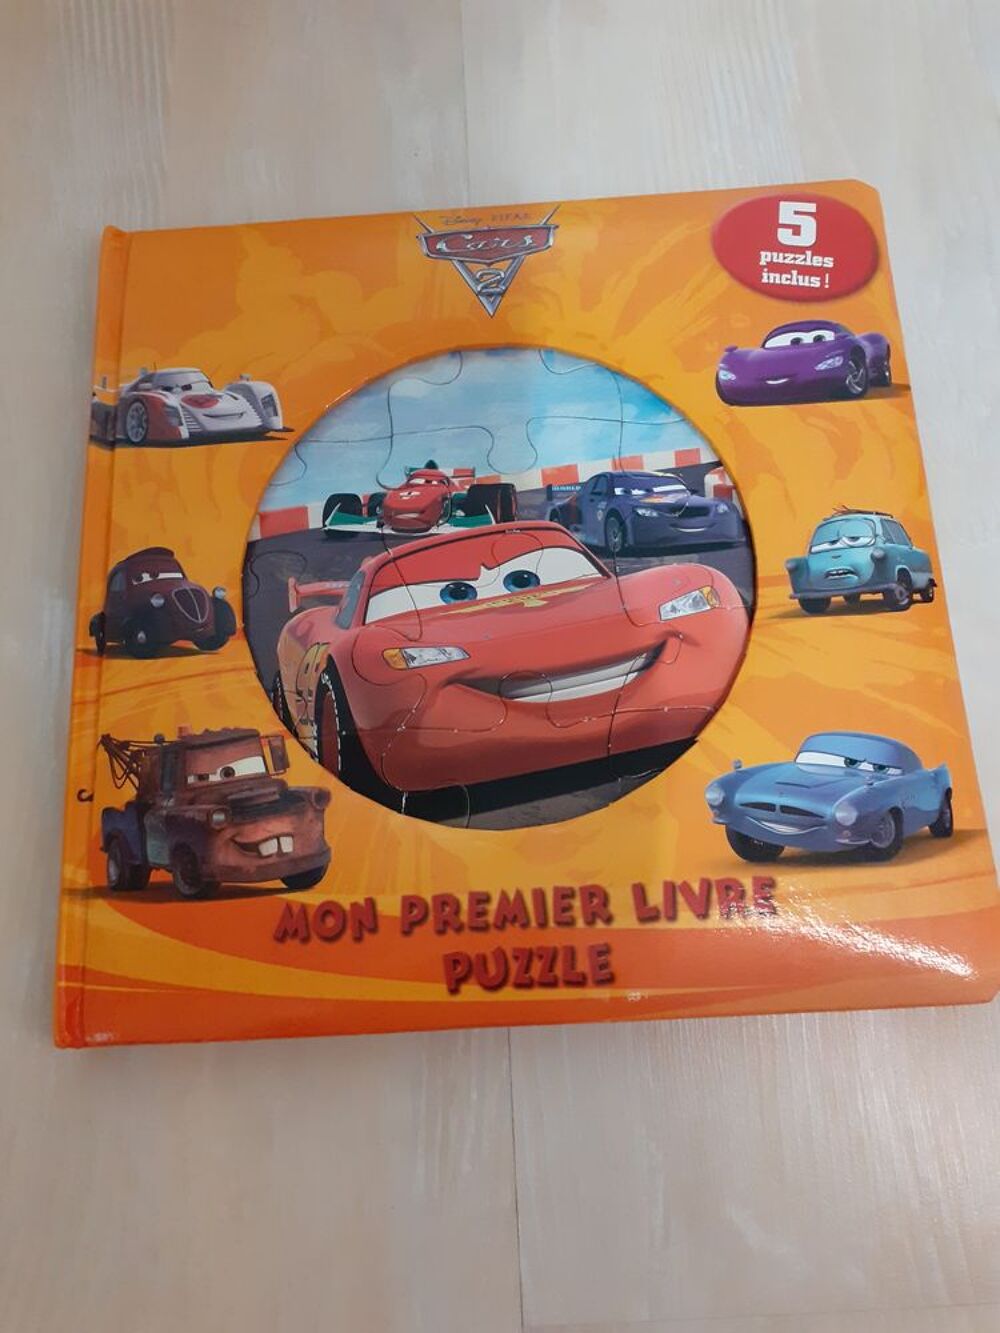 Mon Premier Livre Puzzle &quot;Cars 2&quot; : 5 puzzles de 12 pi&egrave;ces. Jeux / jouets